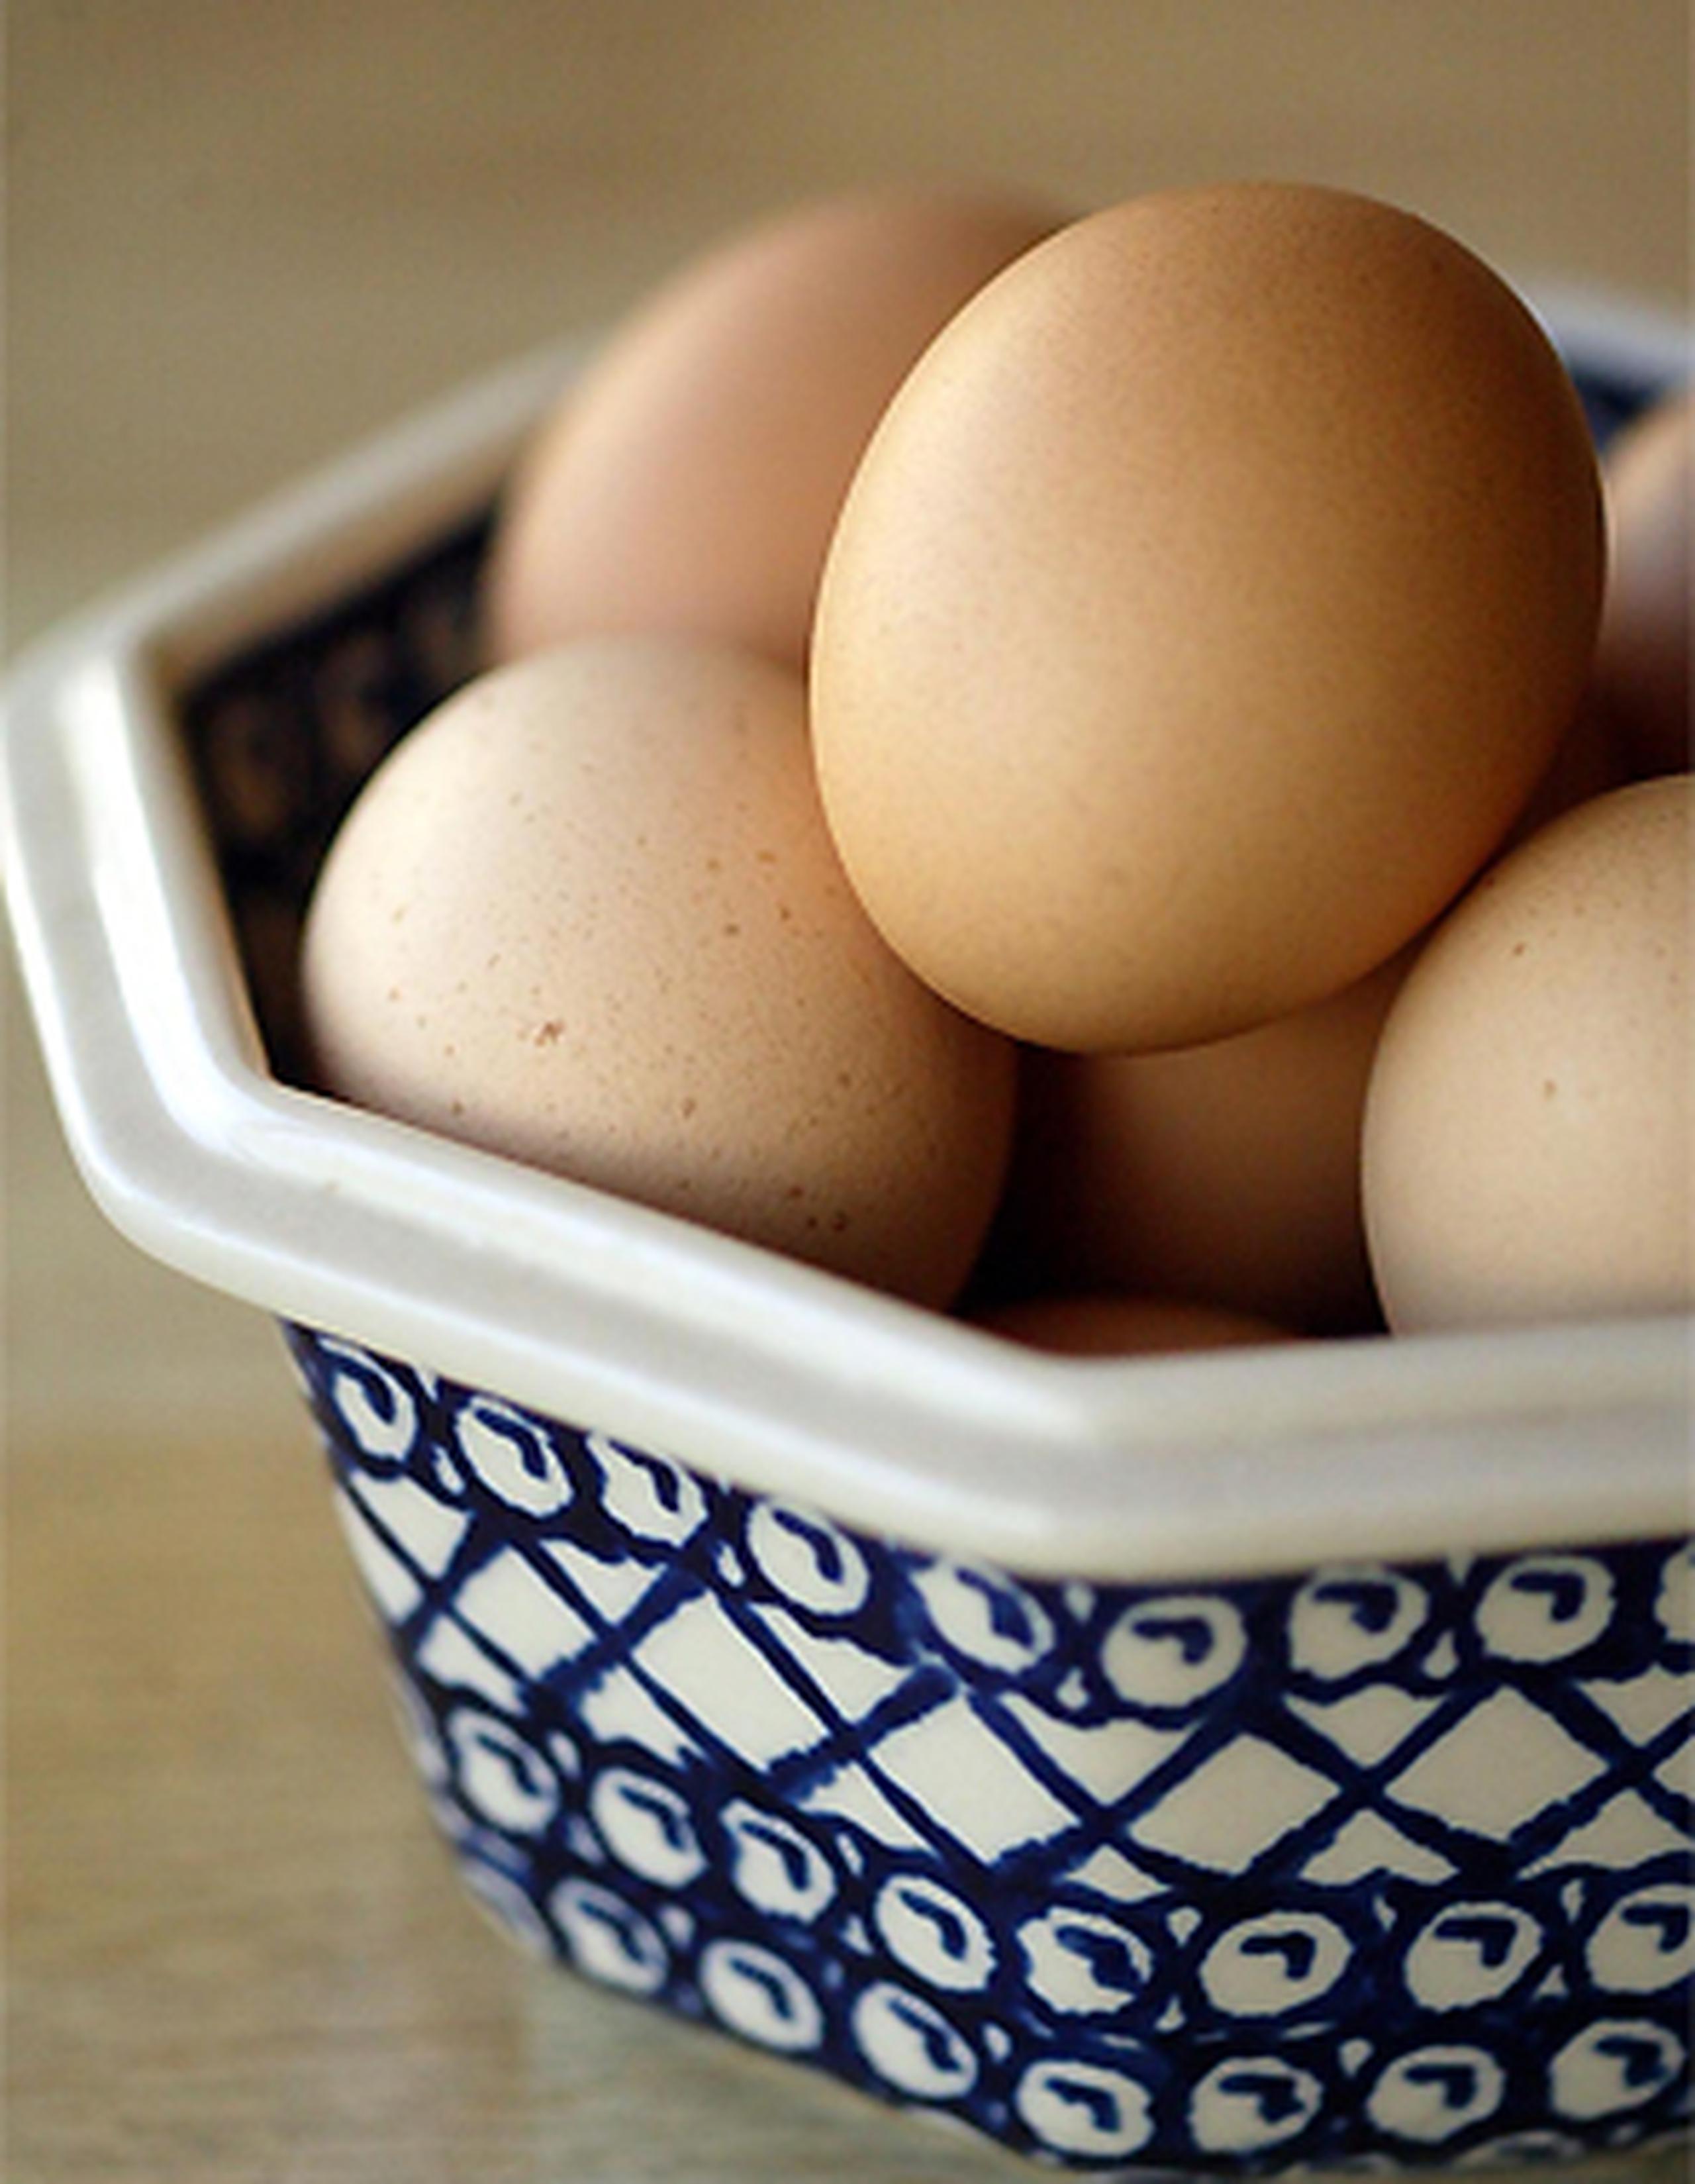 De acuerdo a las pruebas de laboratorio, un péptido en la clara del huevo reduce la presión sanguínea tanto como una dosis baja de Captopril, un medicamento para la presión alta. (Archivo)